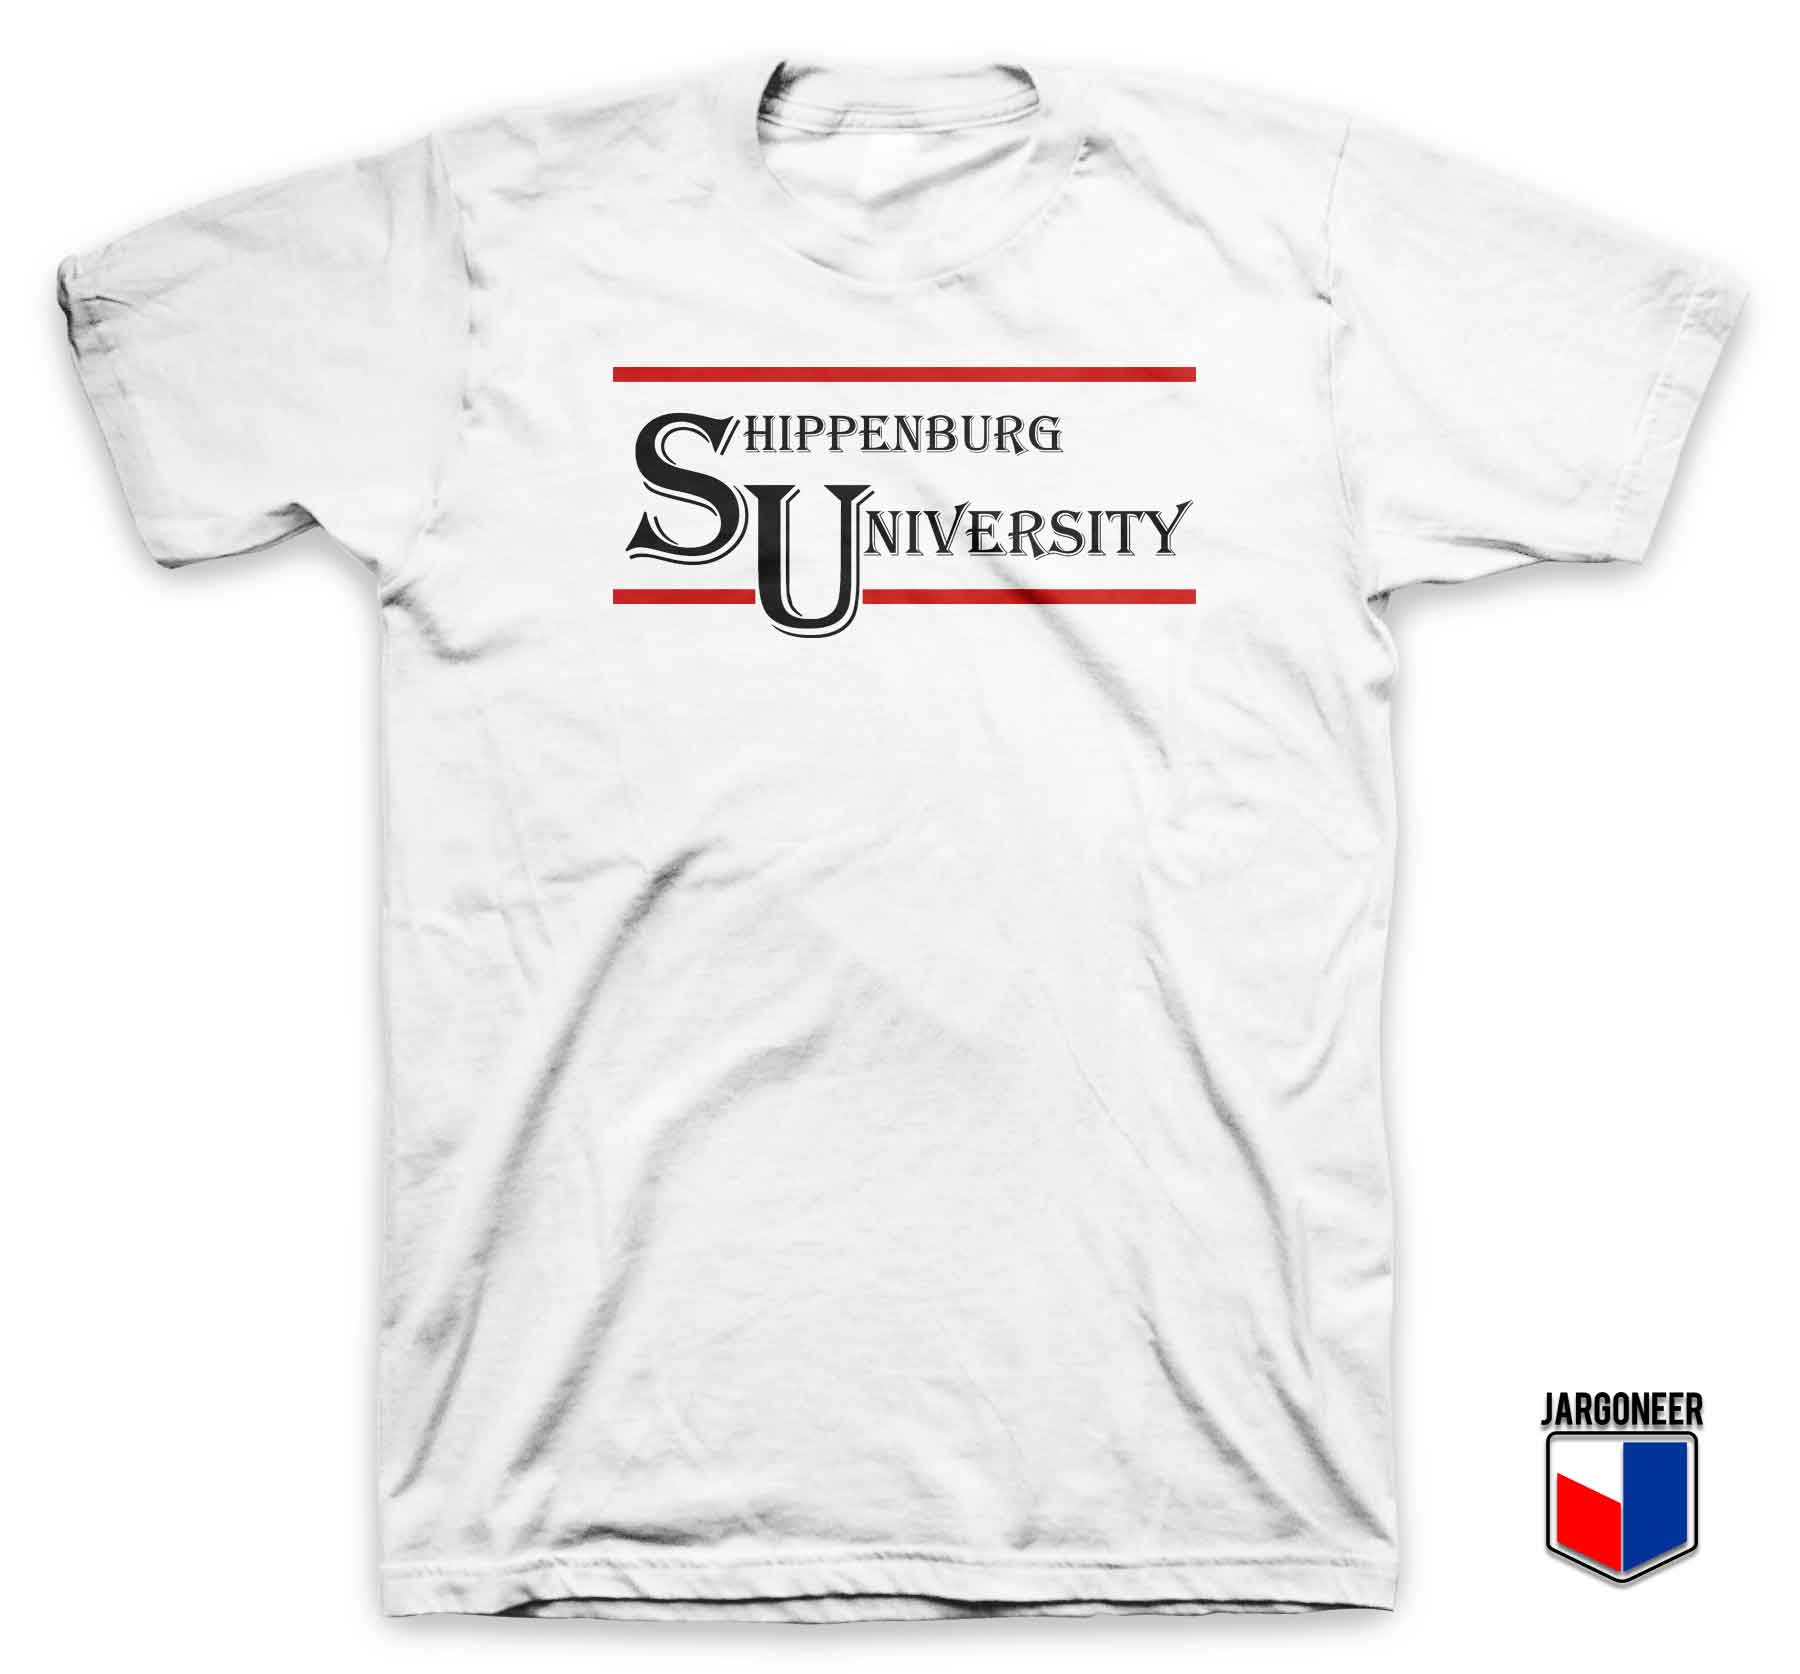 Shippenburg University 3 - Shop Unique Graphic Cool Shirt Designs